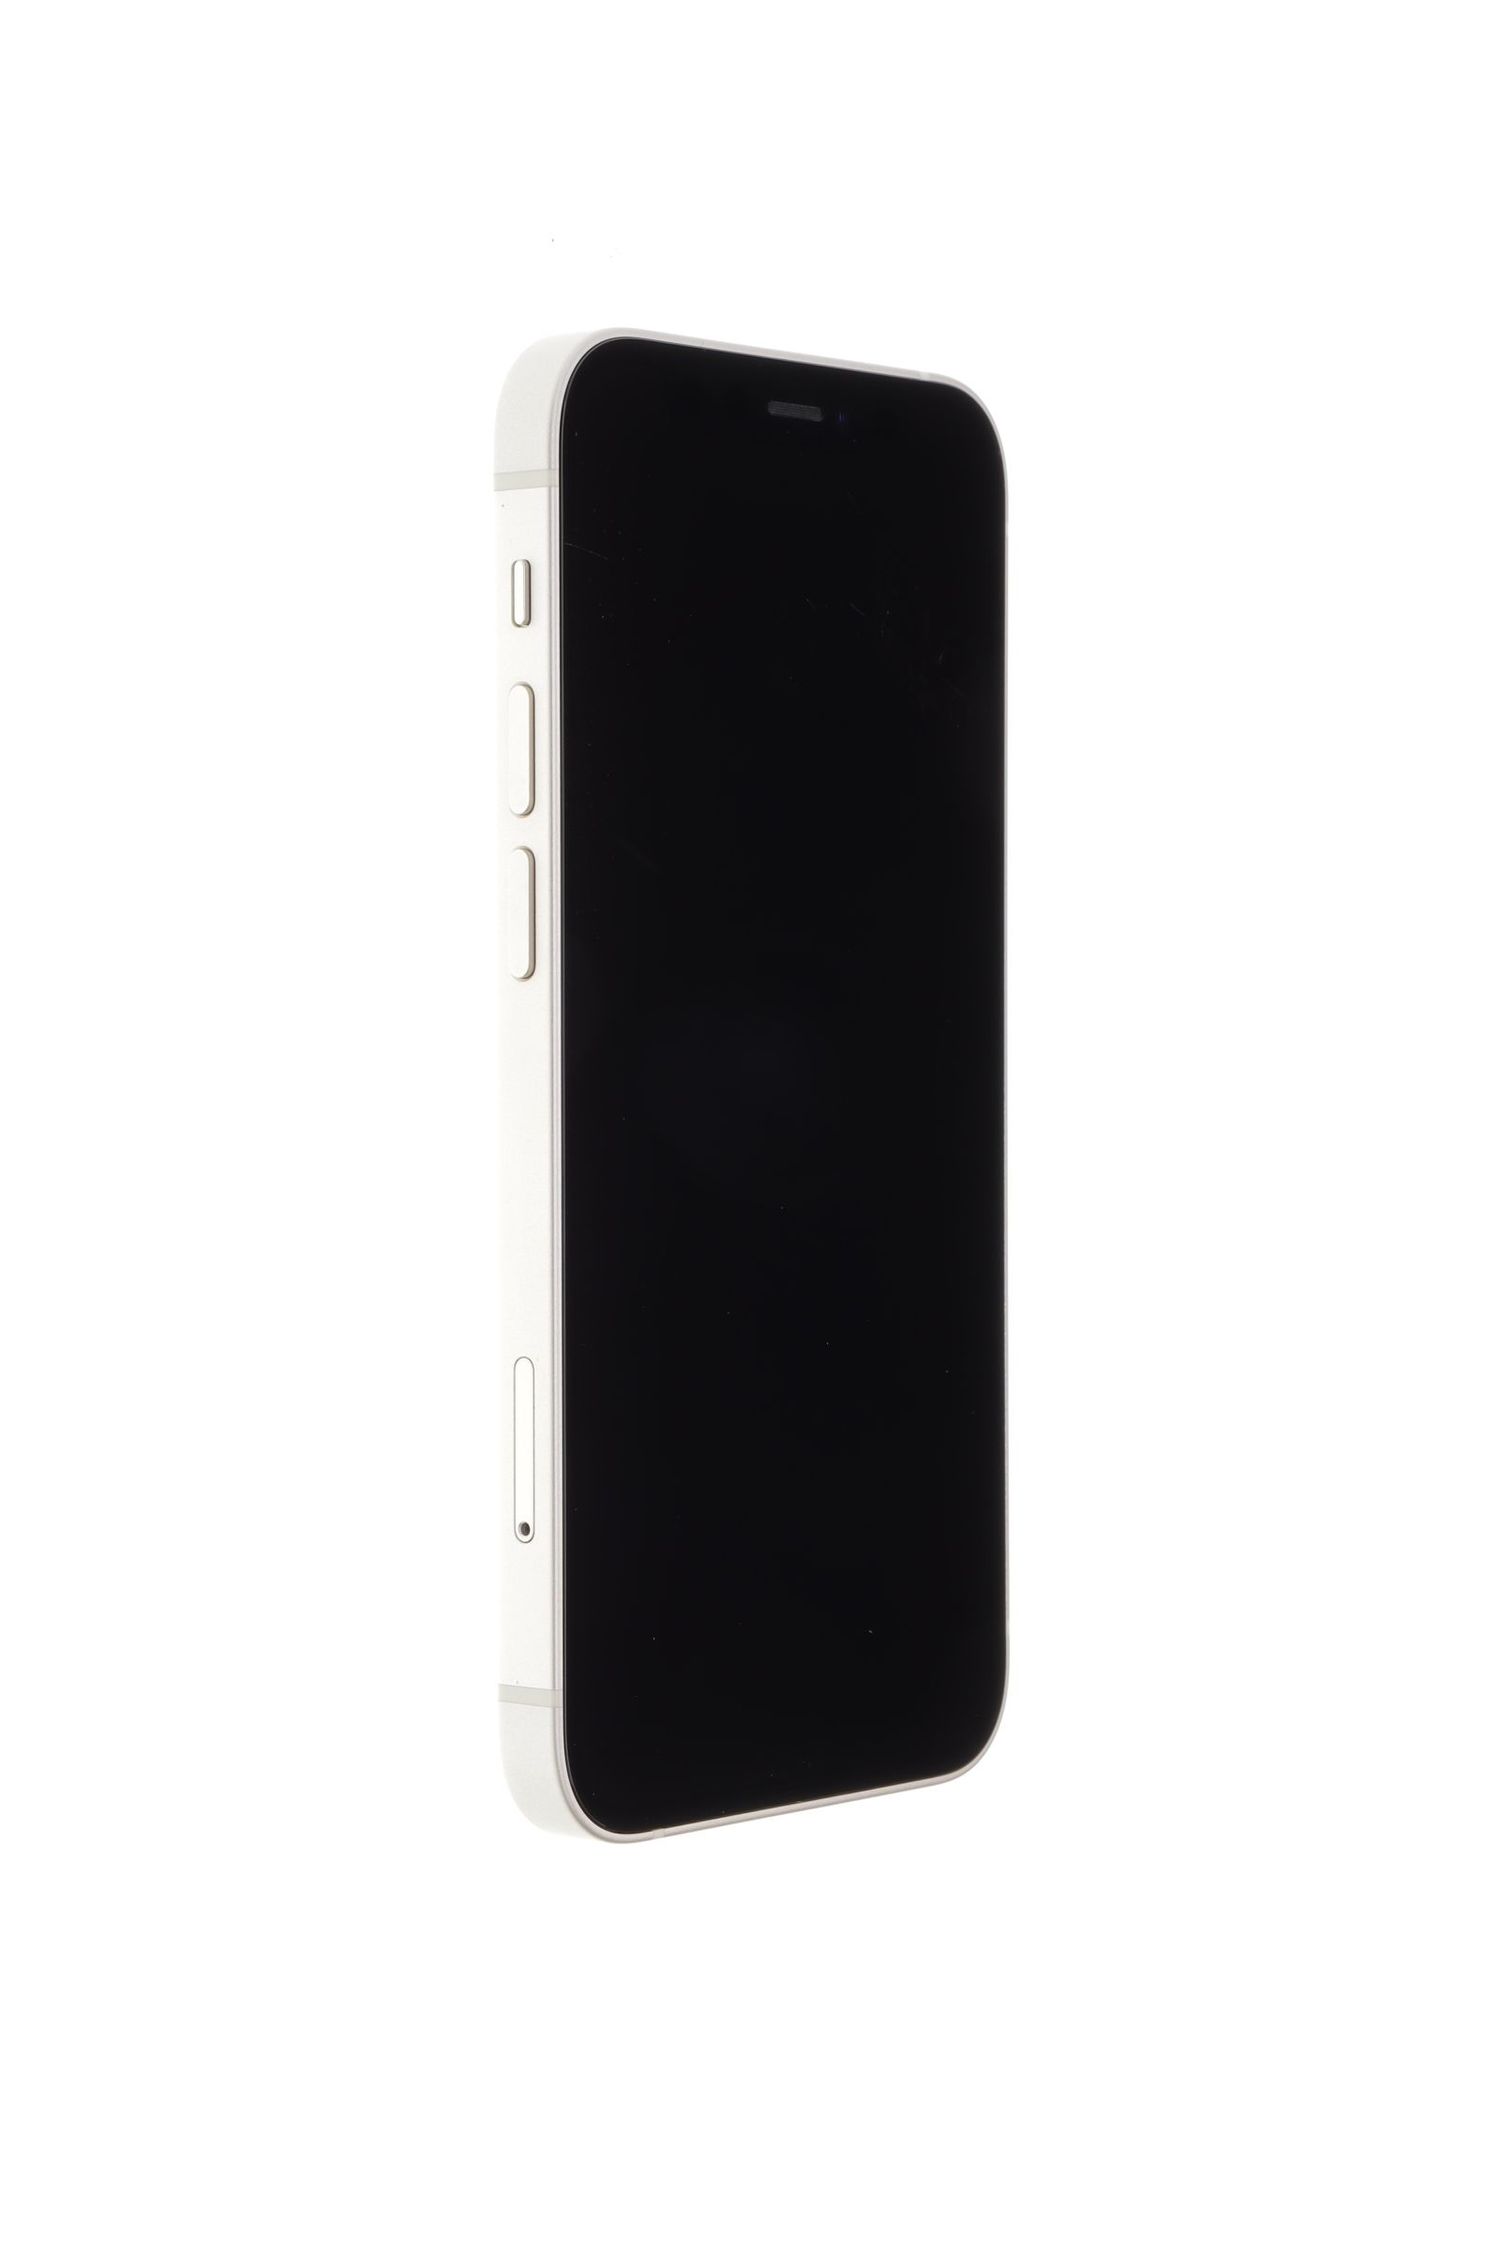 Κινητό τηλέφωνο Apple iPhone 12 mini, White, 256 GB, Excelent